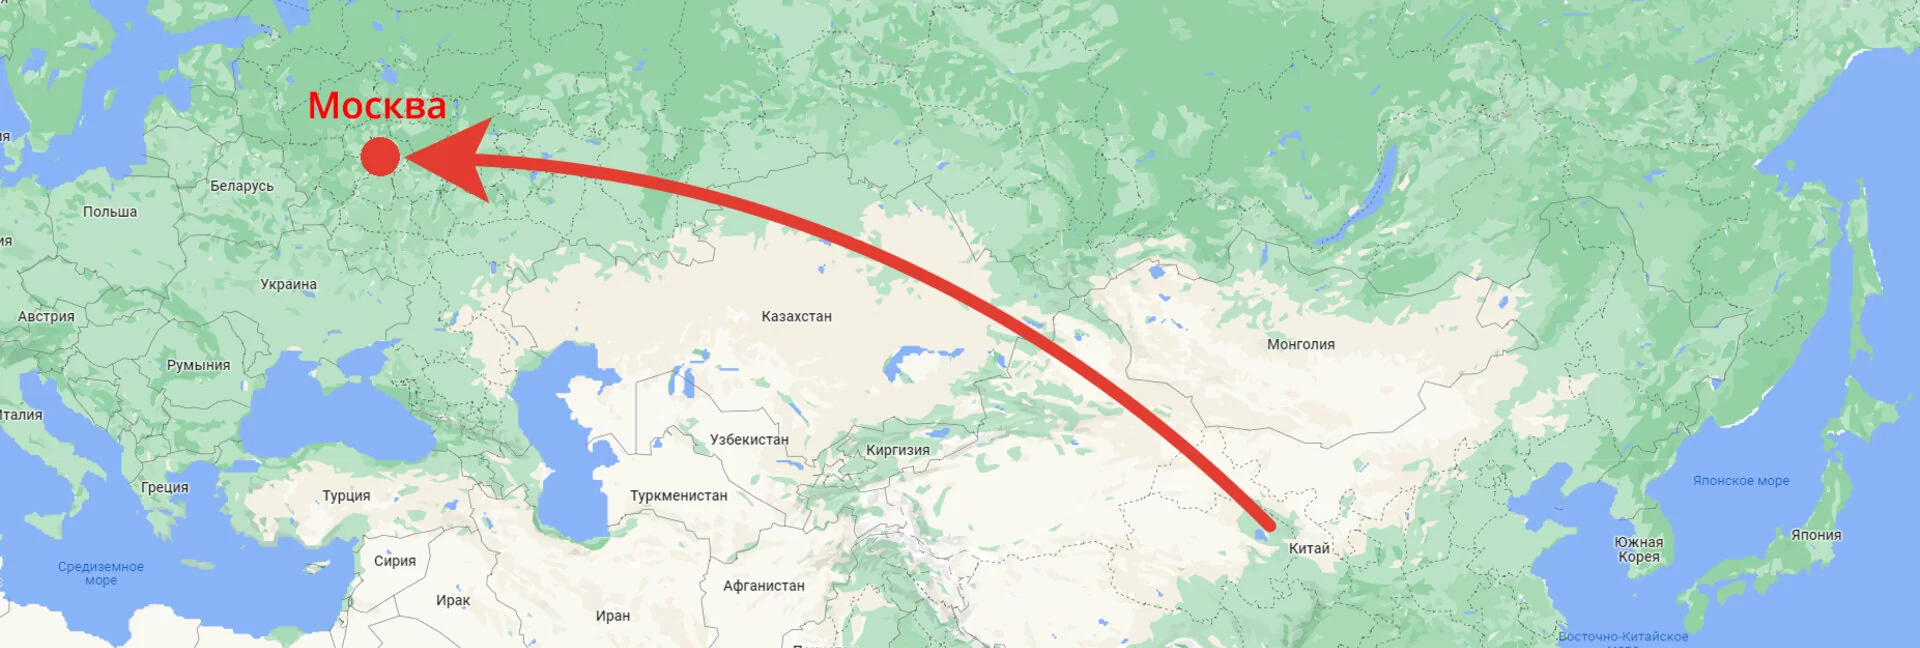 Отправка груза из Китая в Москву на карте